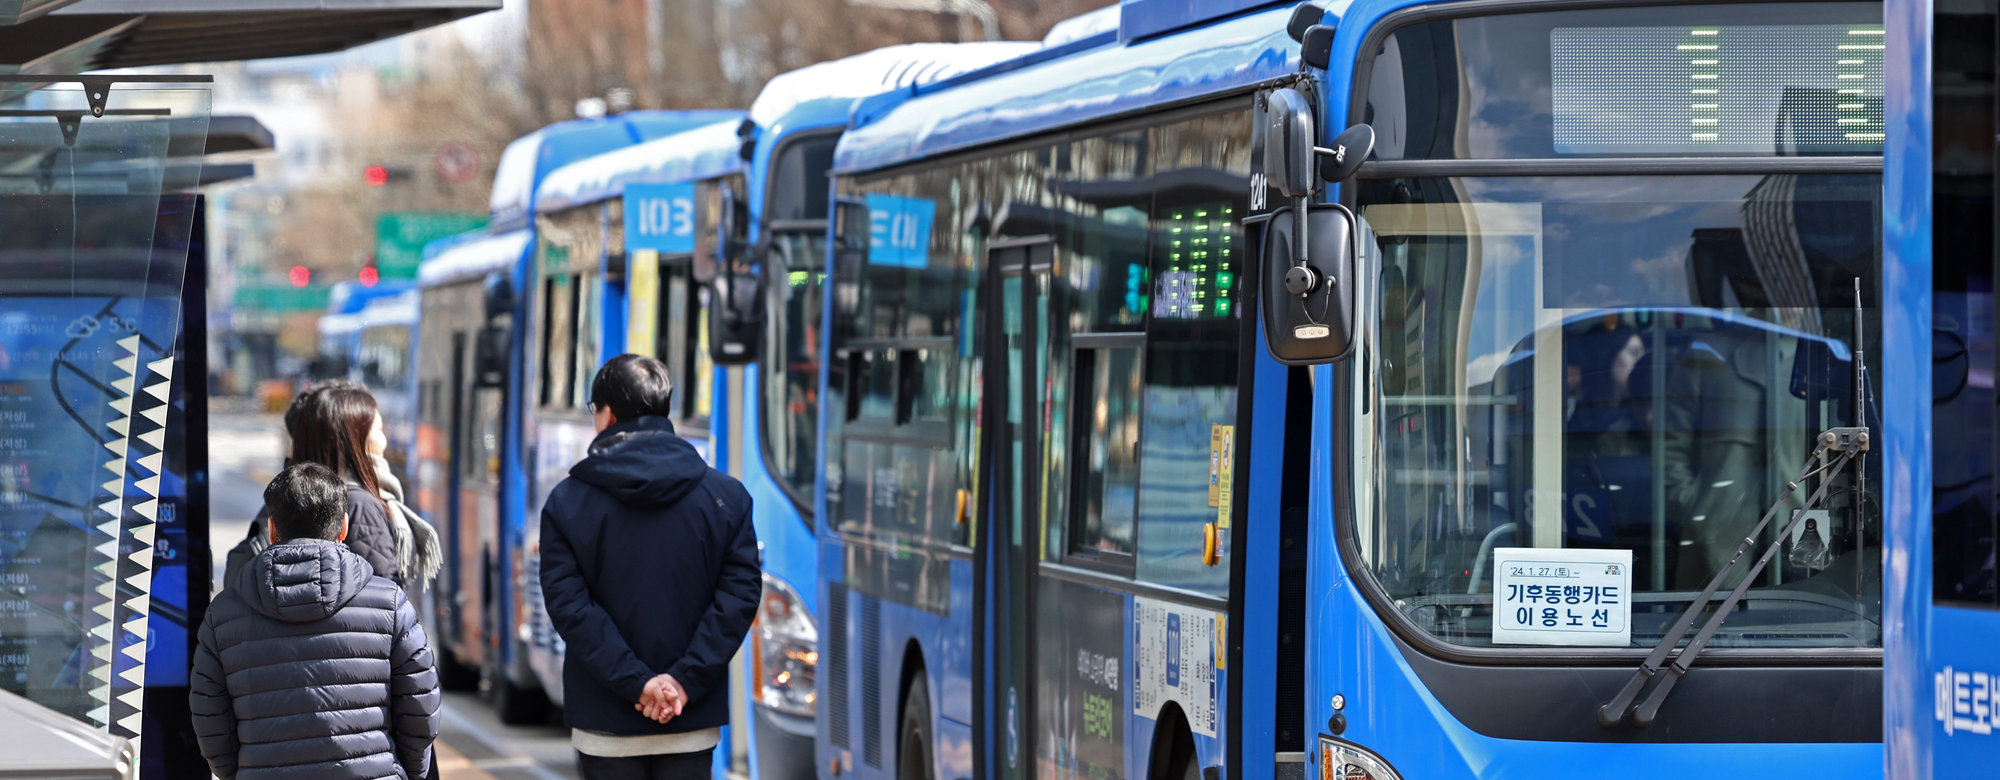 공공물가 27개월 만에 최대 상승…버스·병원비 인상 